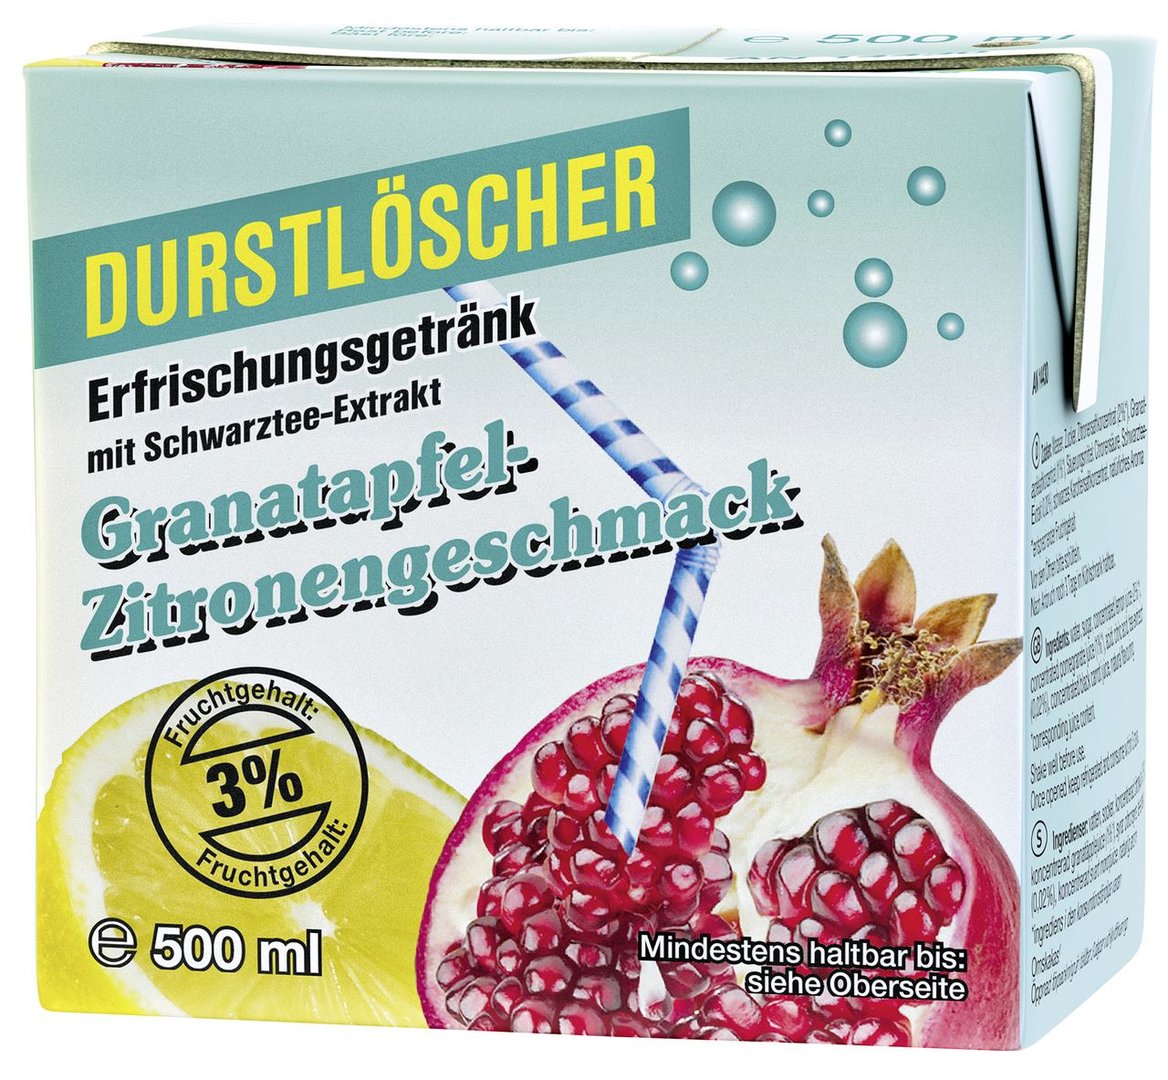 Durstlöscher - Granatapfel-Zitrone 3 % Fruchtgehalt Tetra Pack - 0,50 l Packung